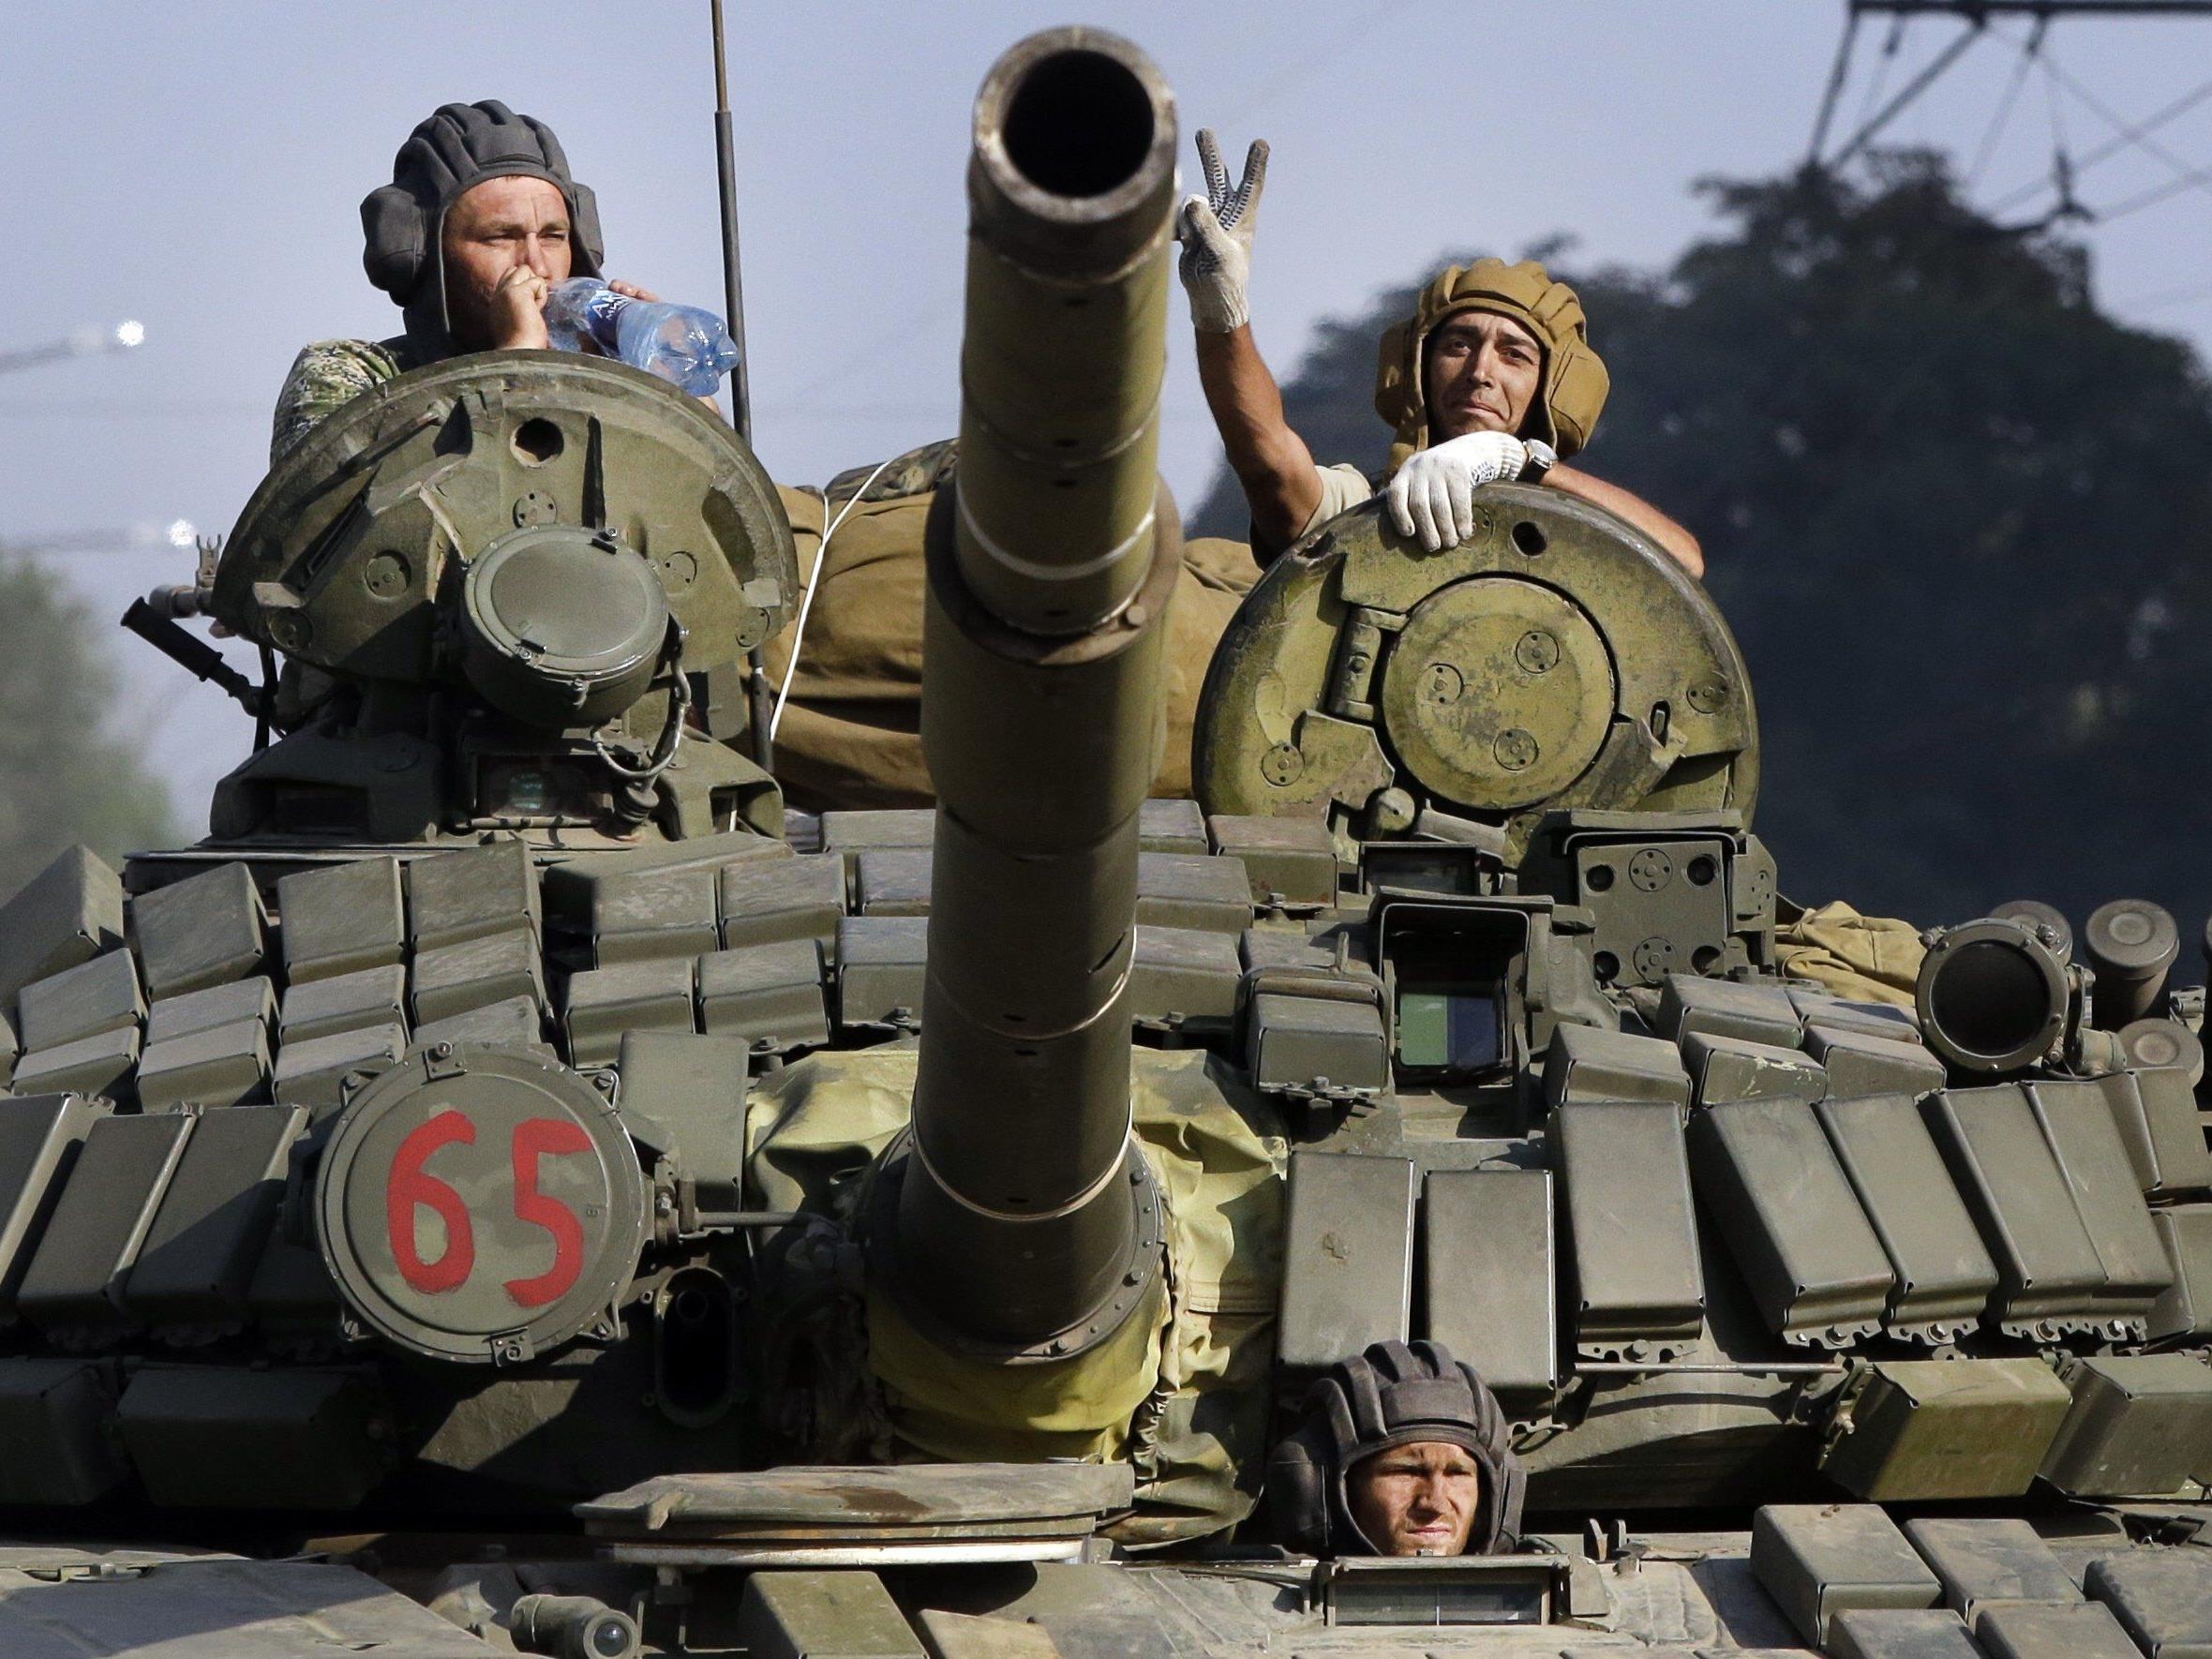 Können mehr Waffen in der Ukraine für ein Ende des Konfliktes sorgen?